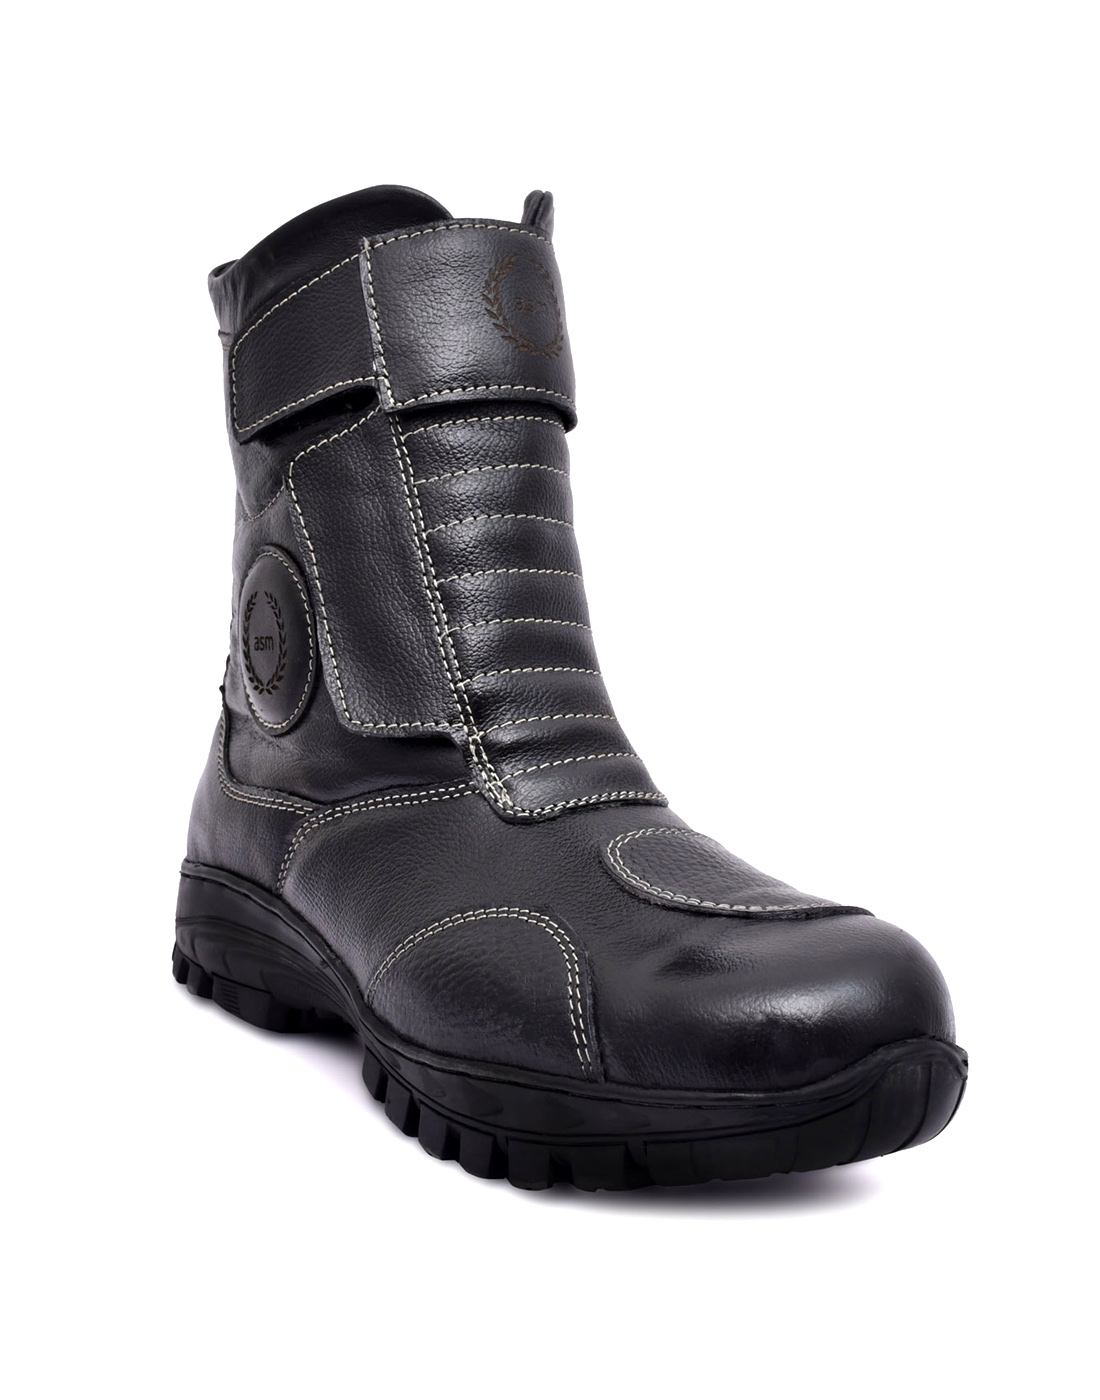 Biker Boots : Black Leather Waterproof Boots with Steel Toe, Heavy Duty Rubber Sole.